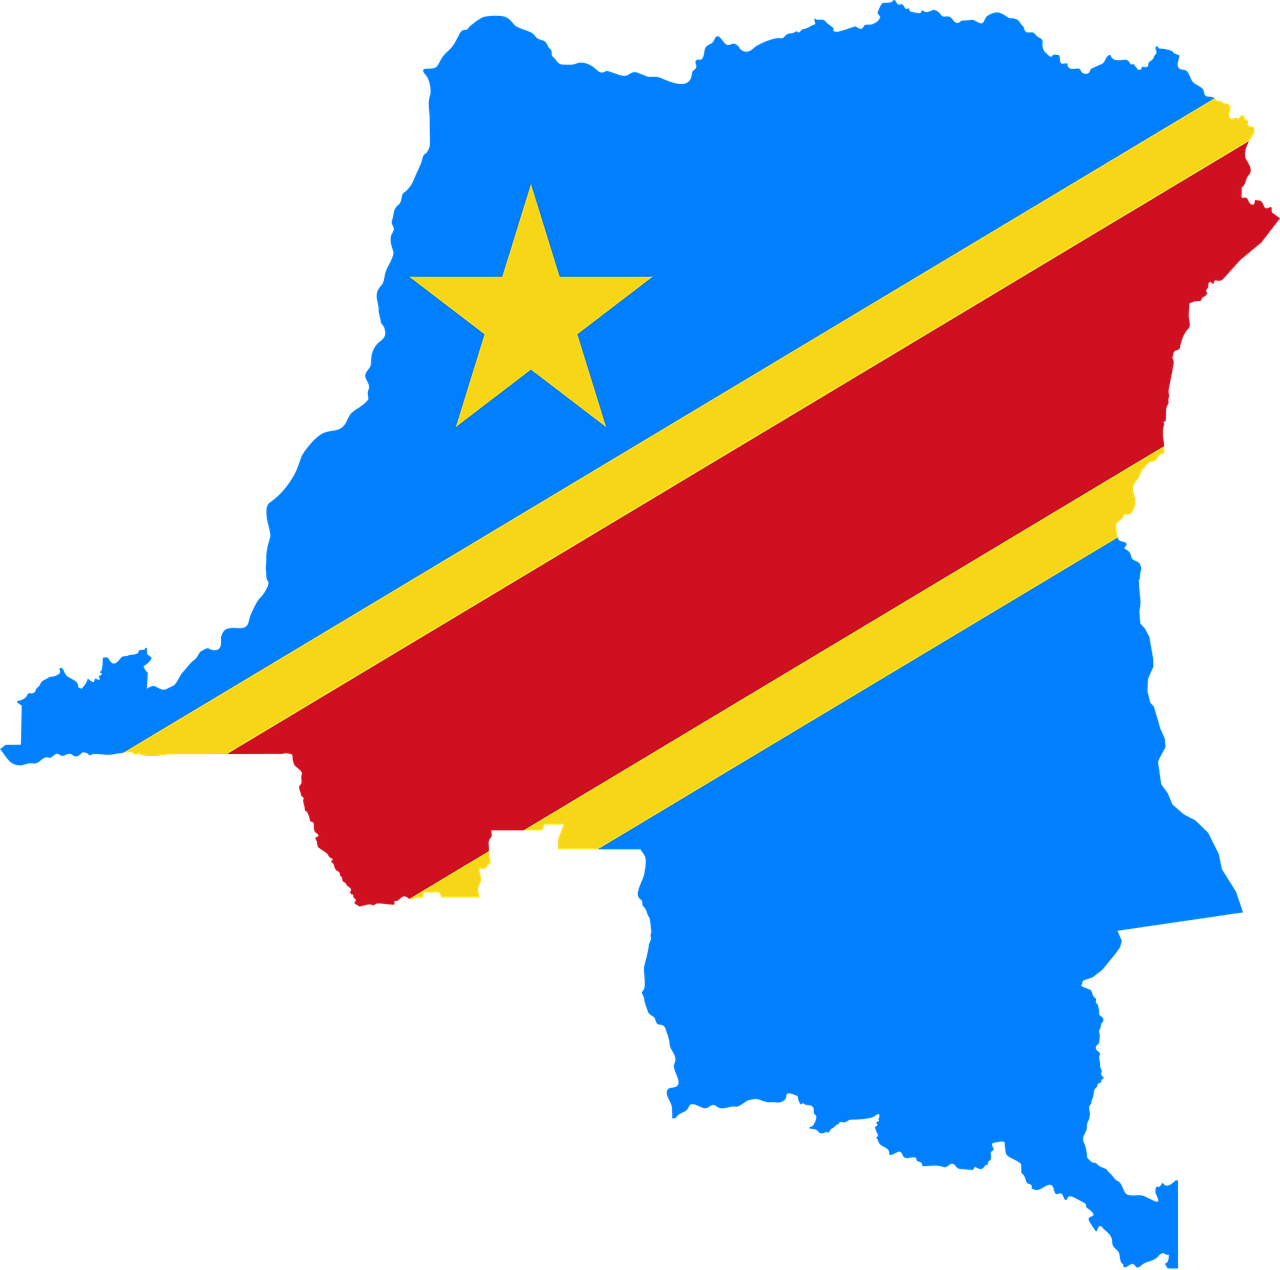 Lista 102+ Foto Mapa De Republica Democratica Del Congo Actualizar